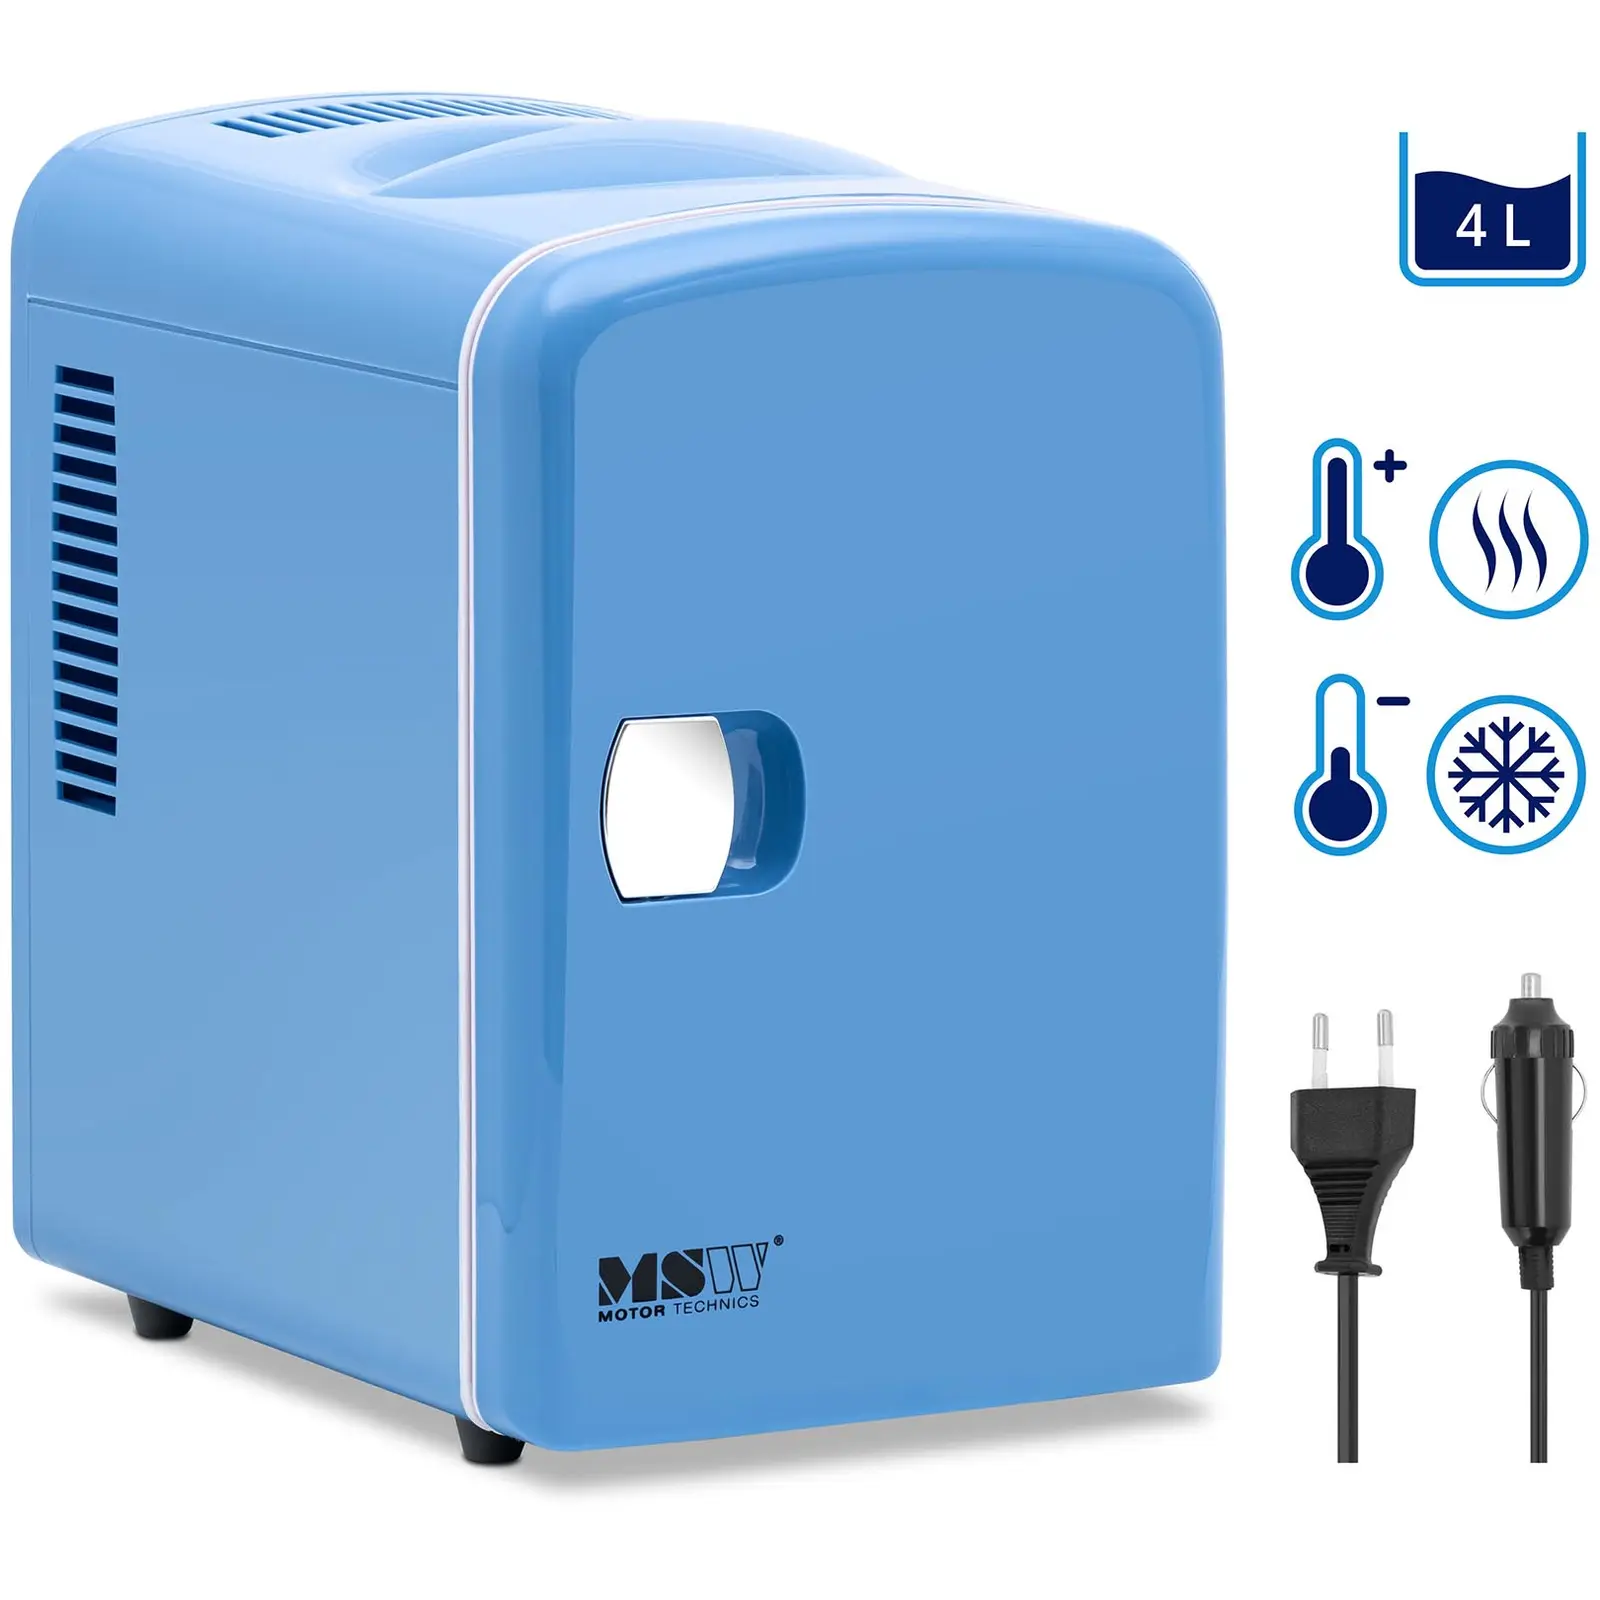 Μίνι ψυγείο 12 V / 230 V - Συσκευή 2 σε 1 με λειτουργία διατήρησης της θερμοκρασίας - 4 L - Μπλε